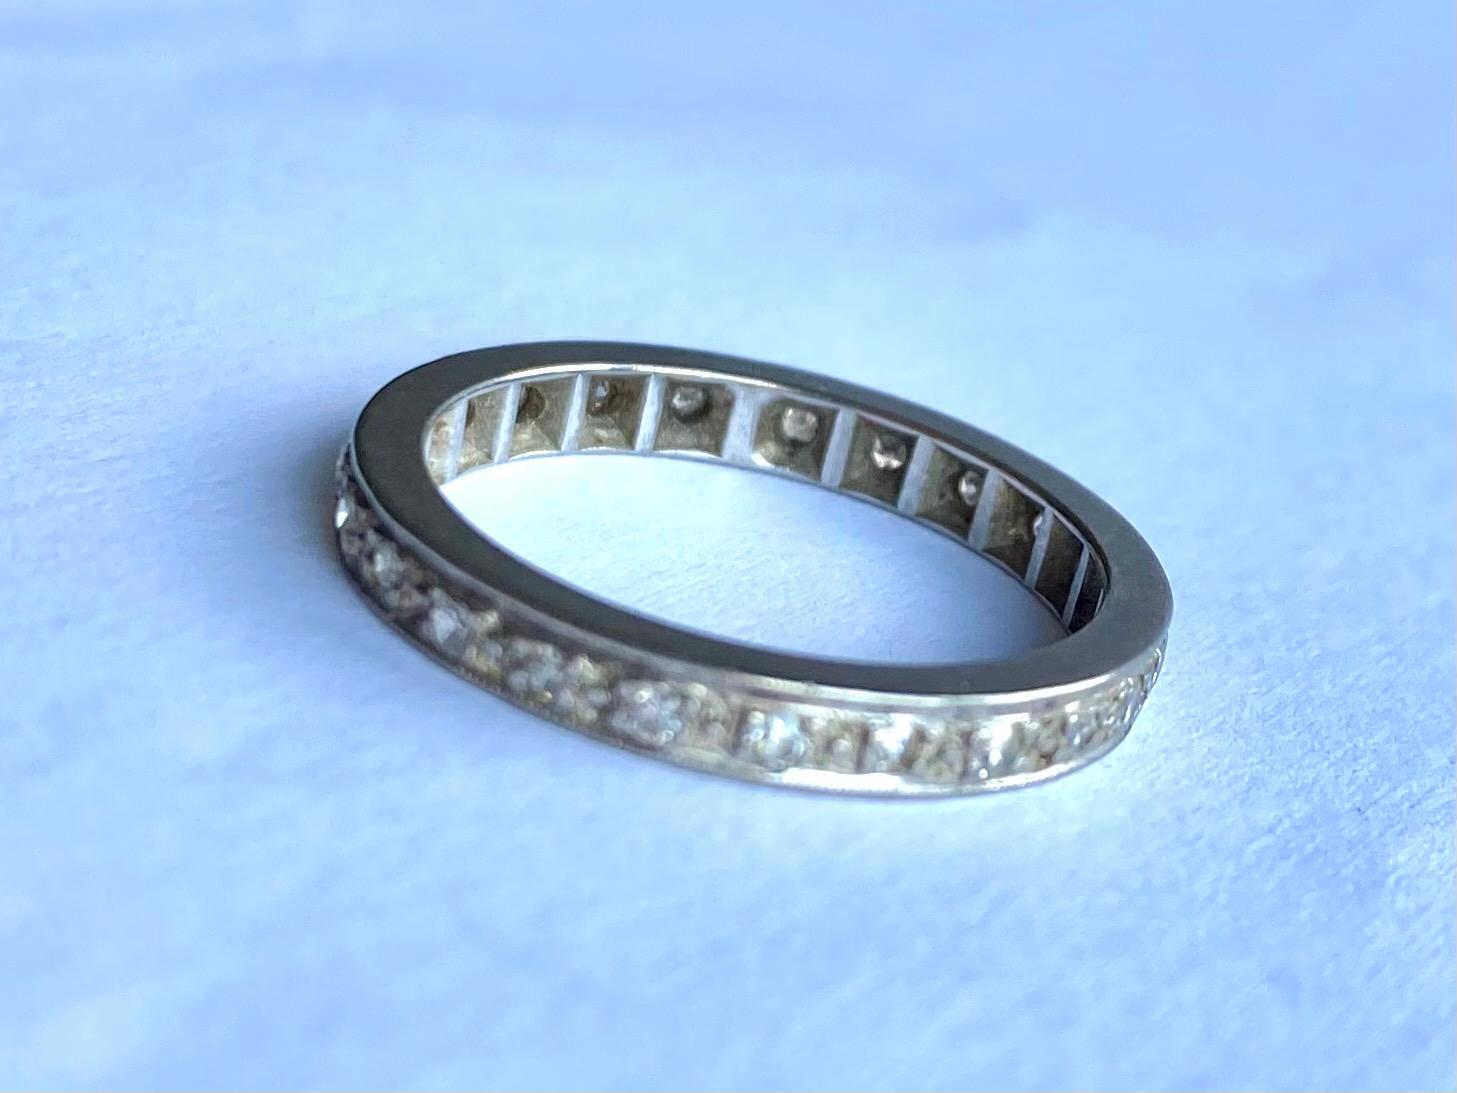 Cet anneau d'éternité scintillant contient des diamants qui totalisent environ 45pts et ont le plus merveilleux des éclats. Les diamants sont sertis dans l'anneau qui est en or blanc 18 carats. 

Taille de l'anneau : L 1/2 ou 6 
Largeur de la bande